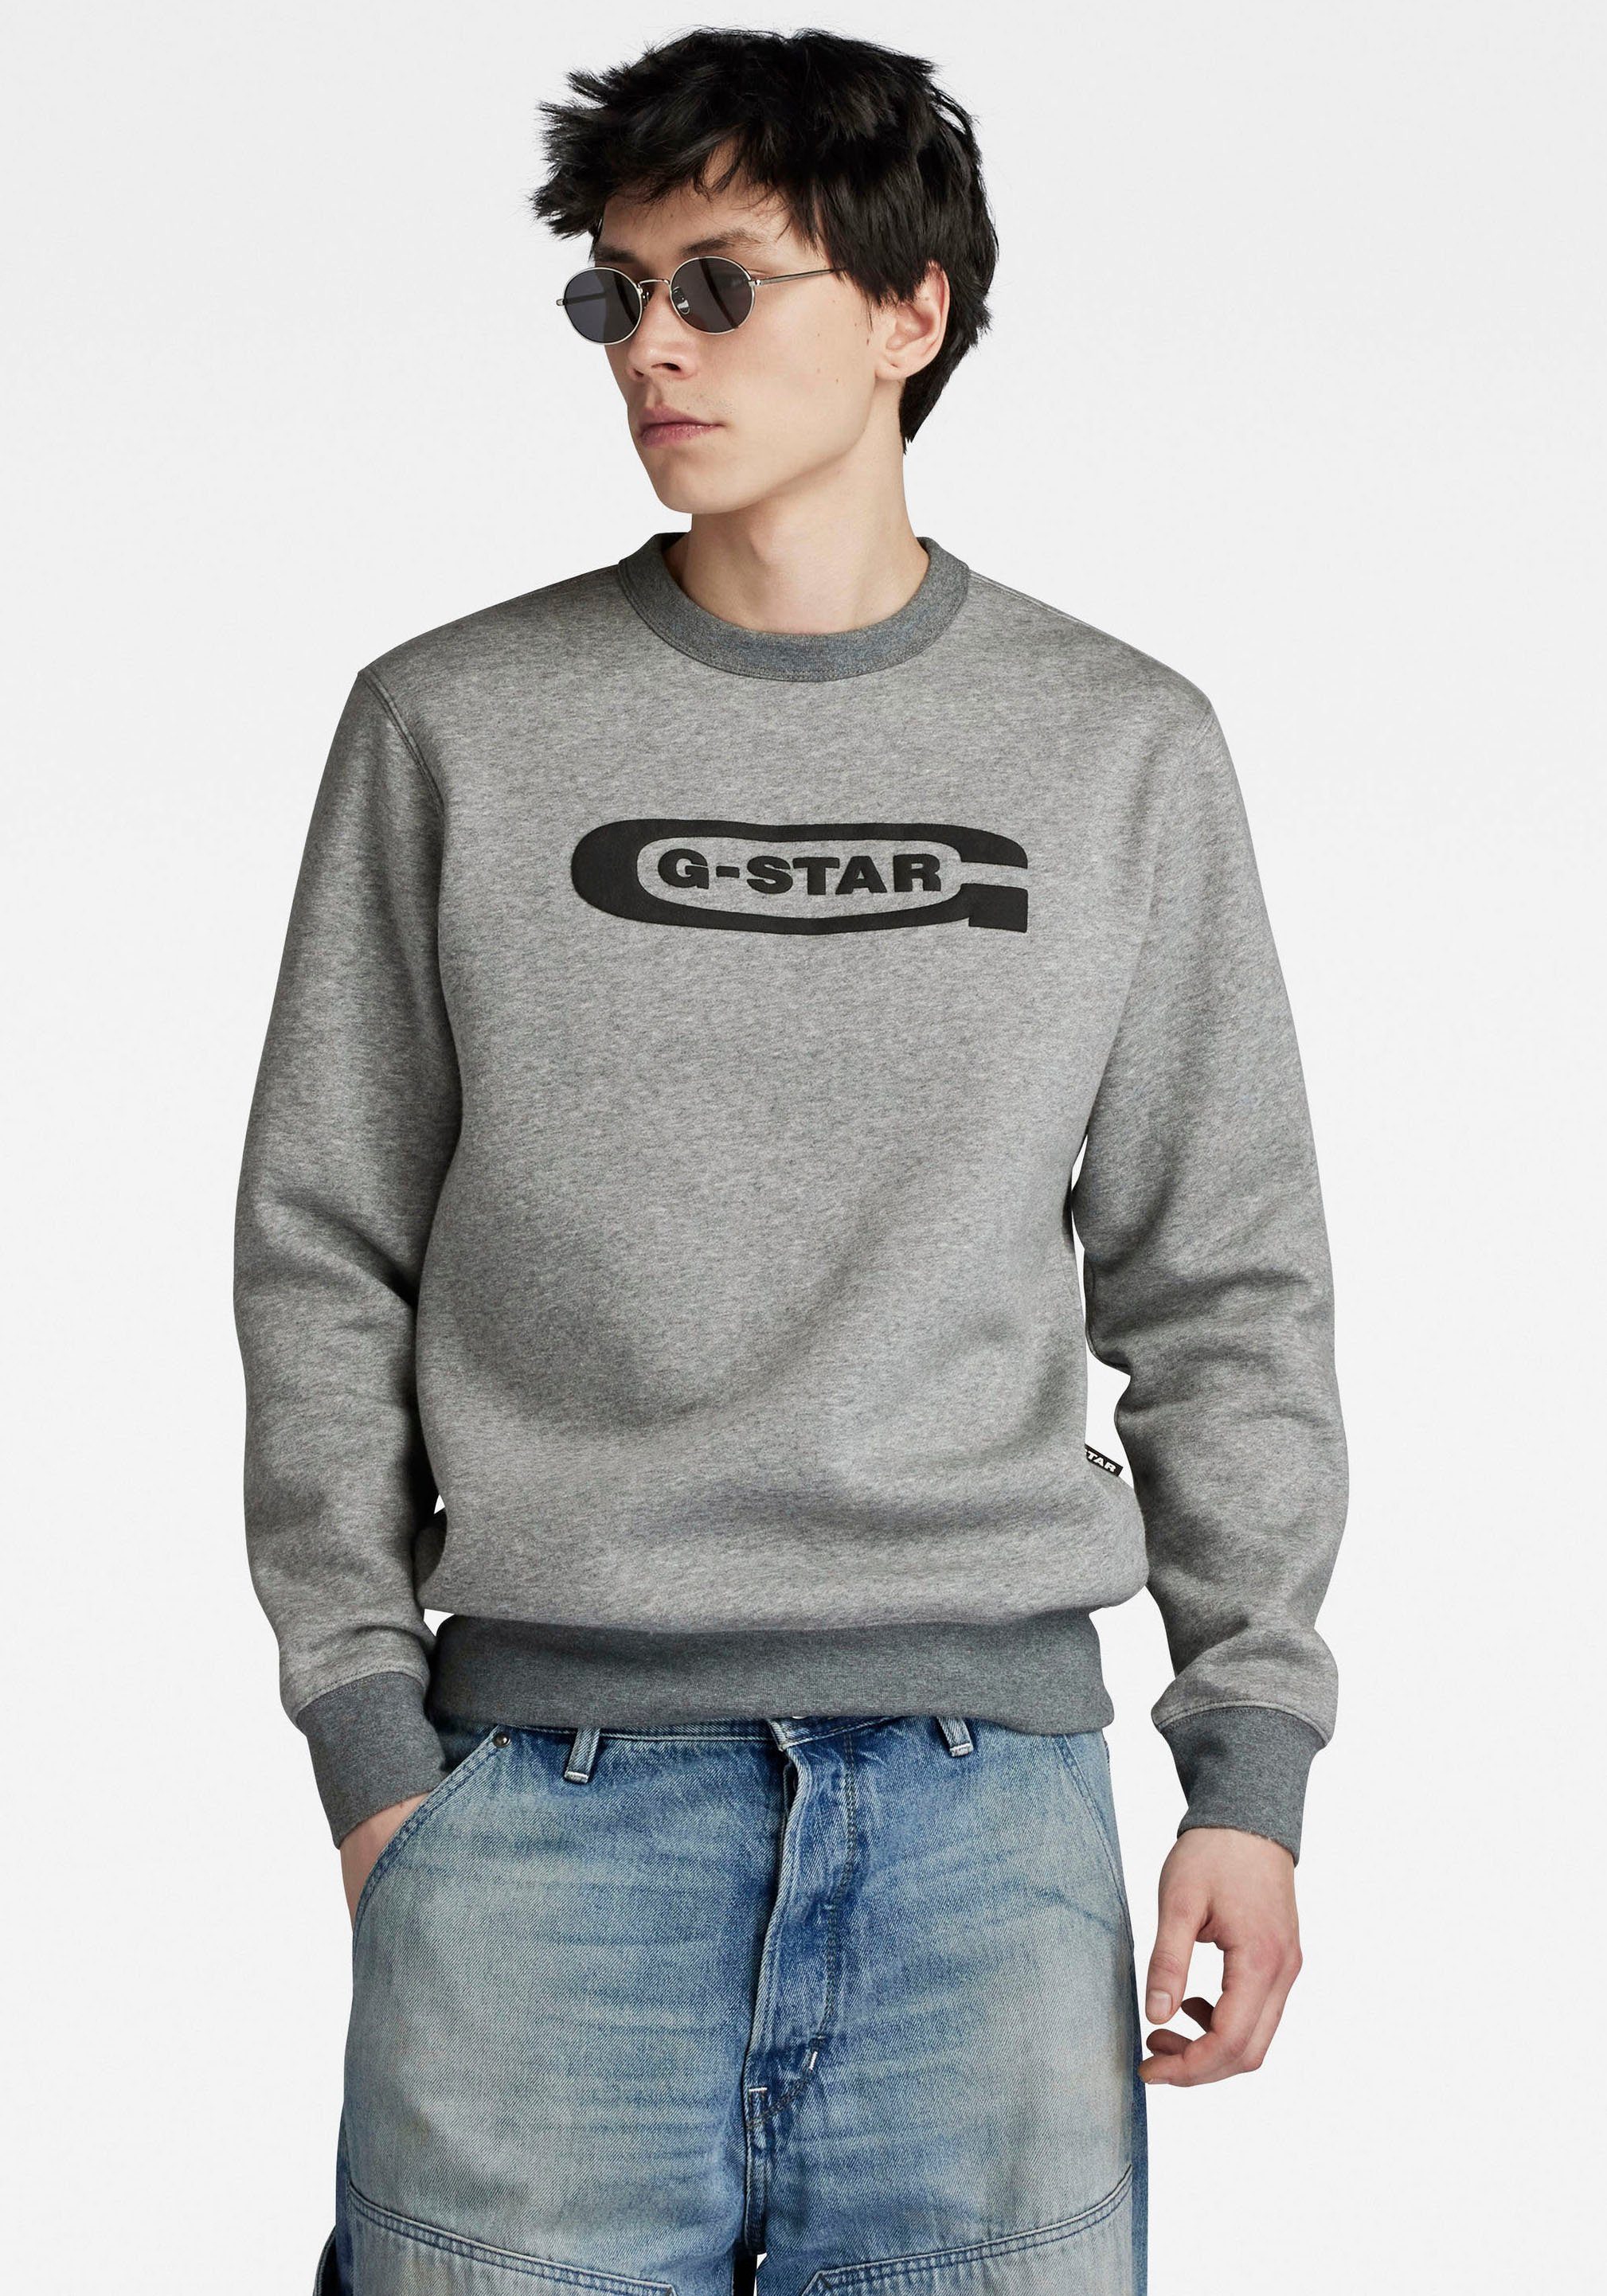 G-Star RAW Sweatshirt Old school logo r sw medium grey htr